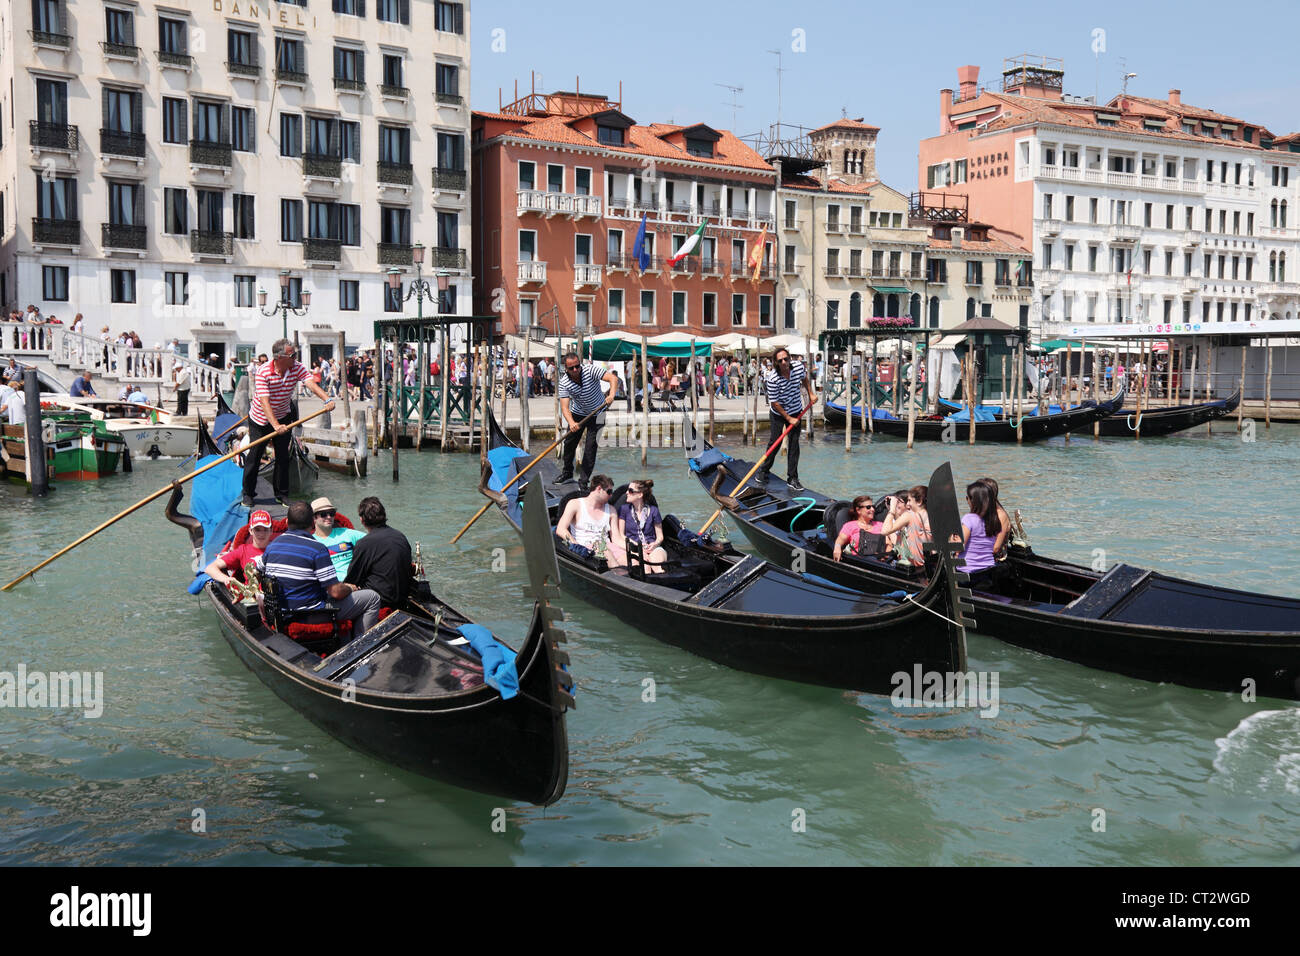 Personnes équitation de gondoles au San Marco, sur le Grand Canal à Venise. Italie Banque D'Images